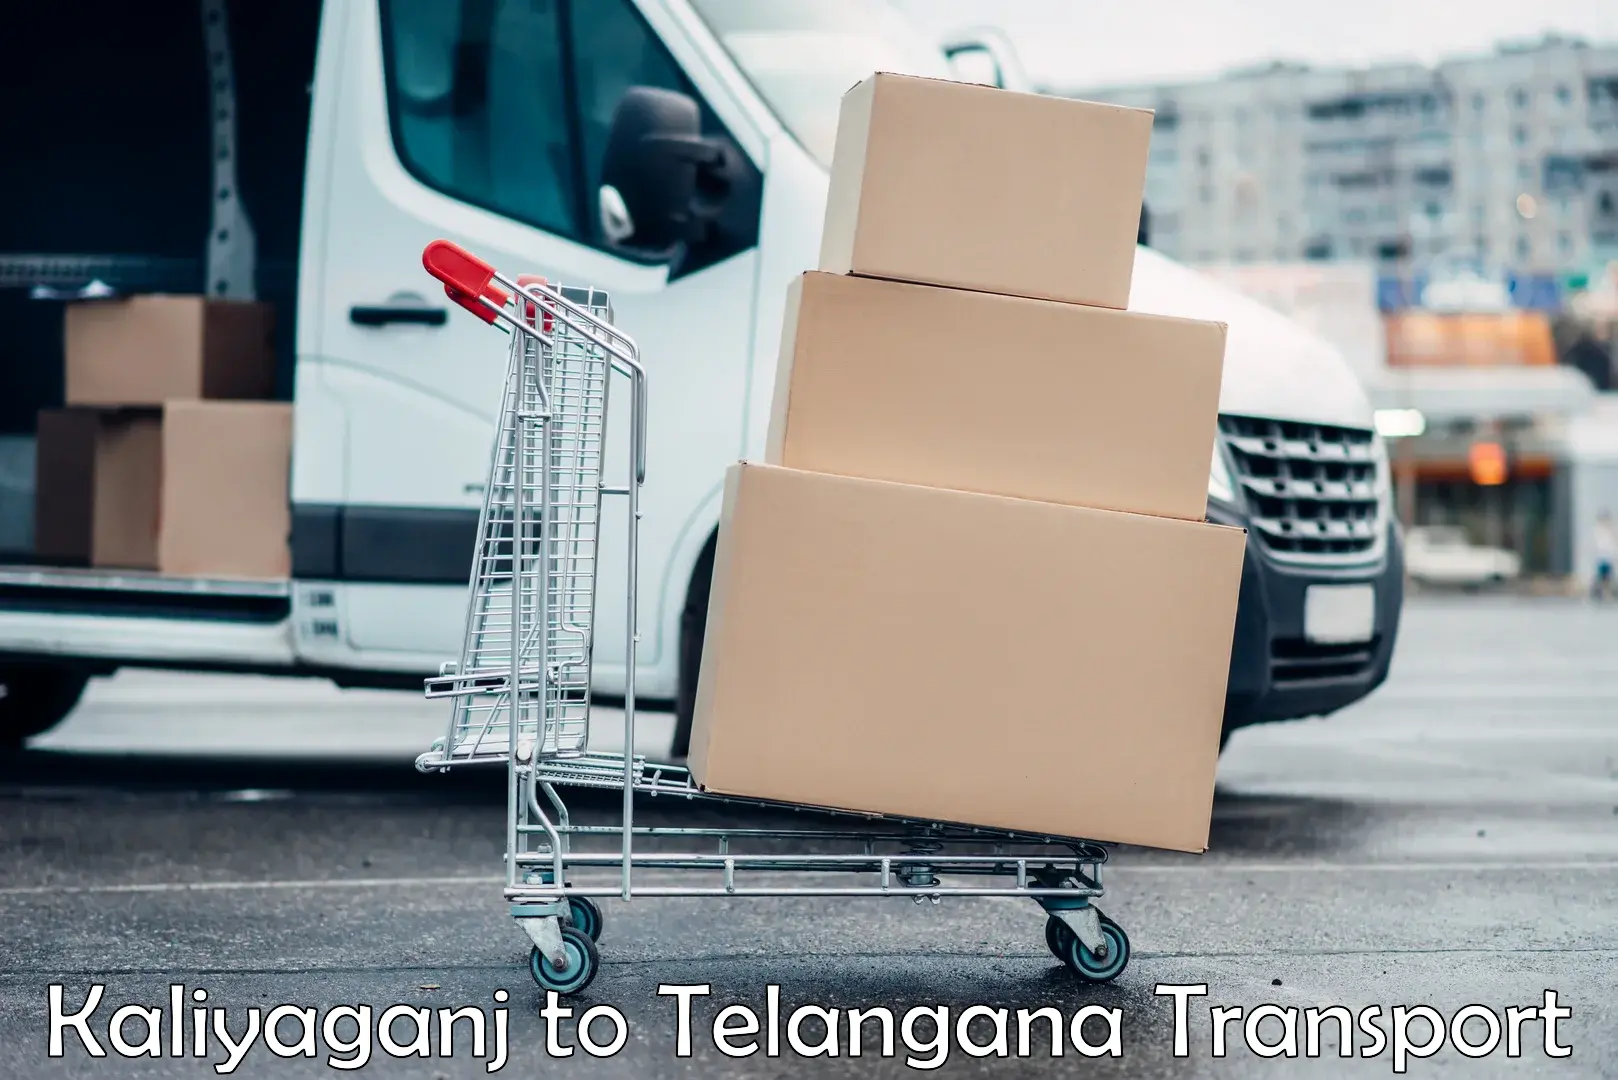 Online transport booking Kaliyaganj to Eligedu